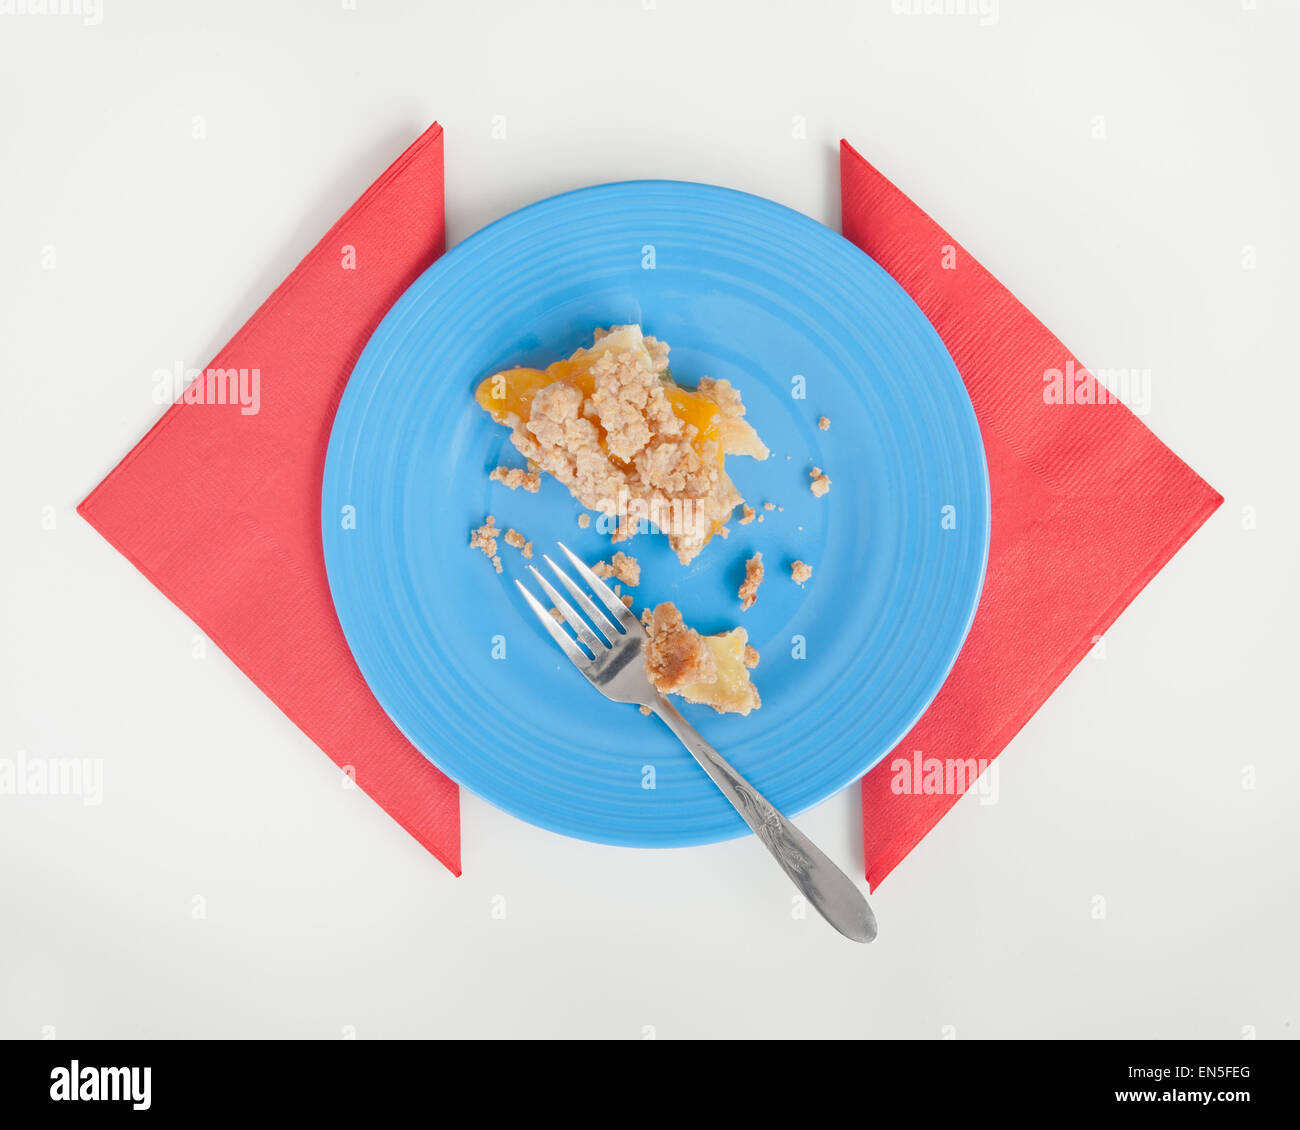 Pfirsich-Streusel Kuchen Reste auf der blauen Platte mit roten Servietten. Weiße Tischplatte. Stockfoto